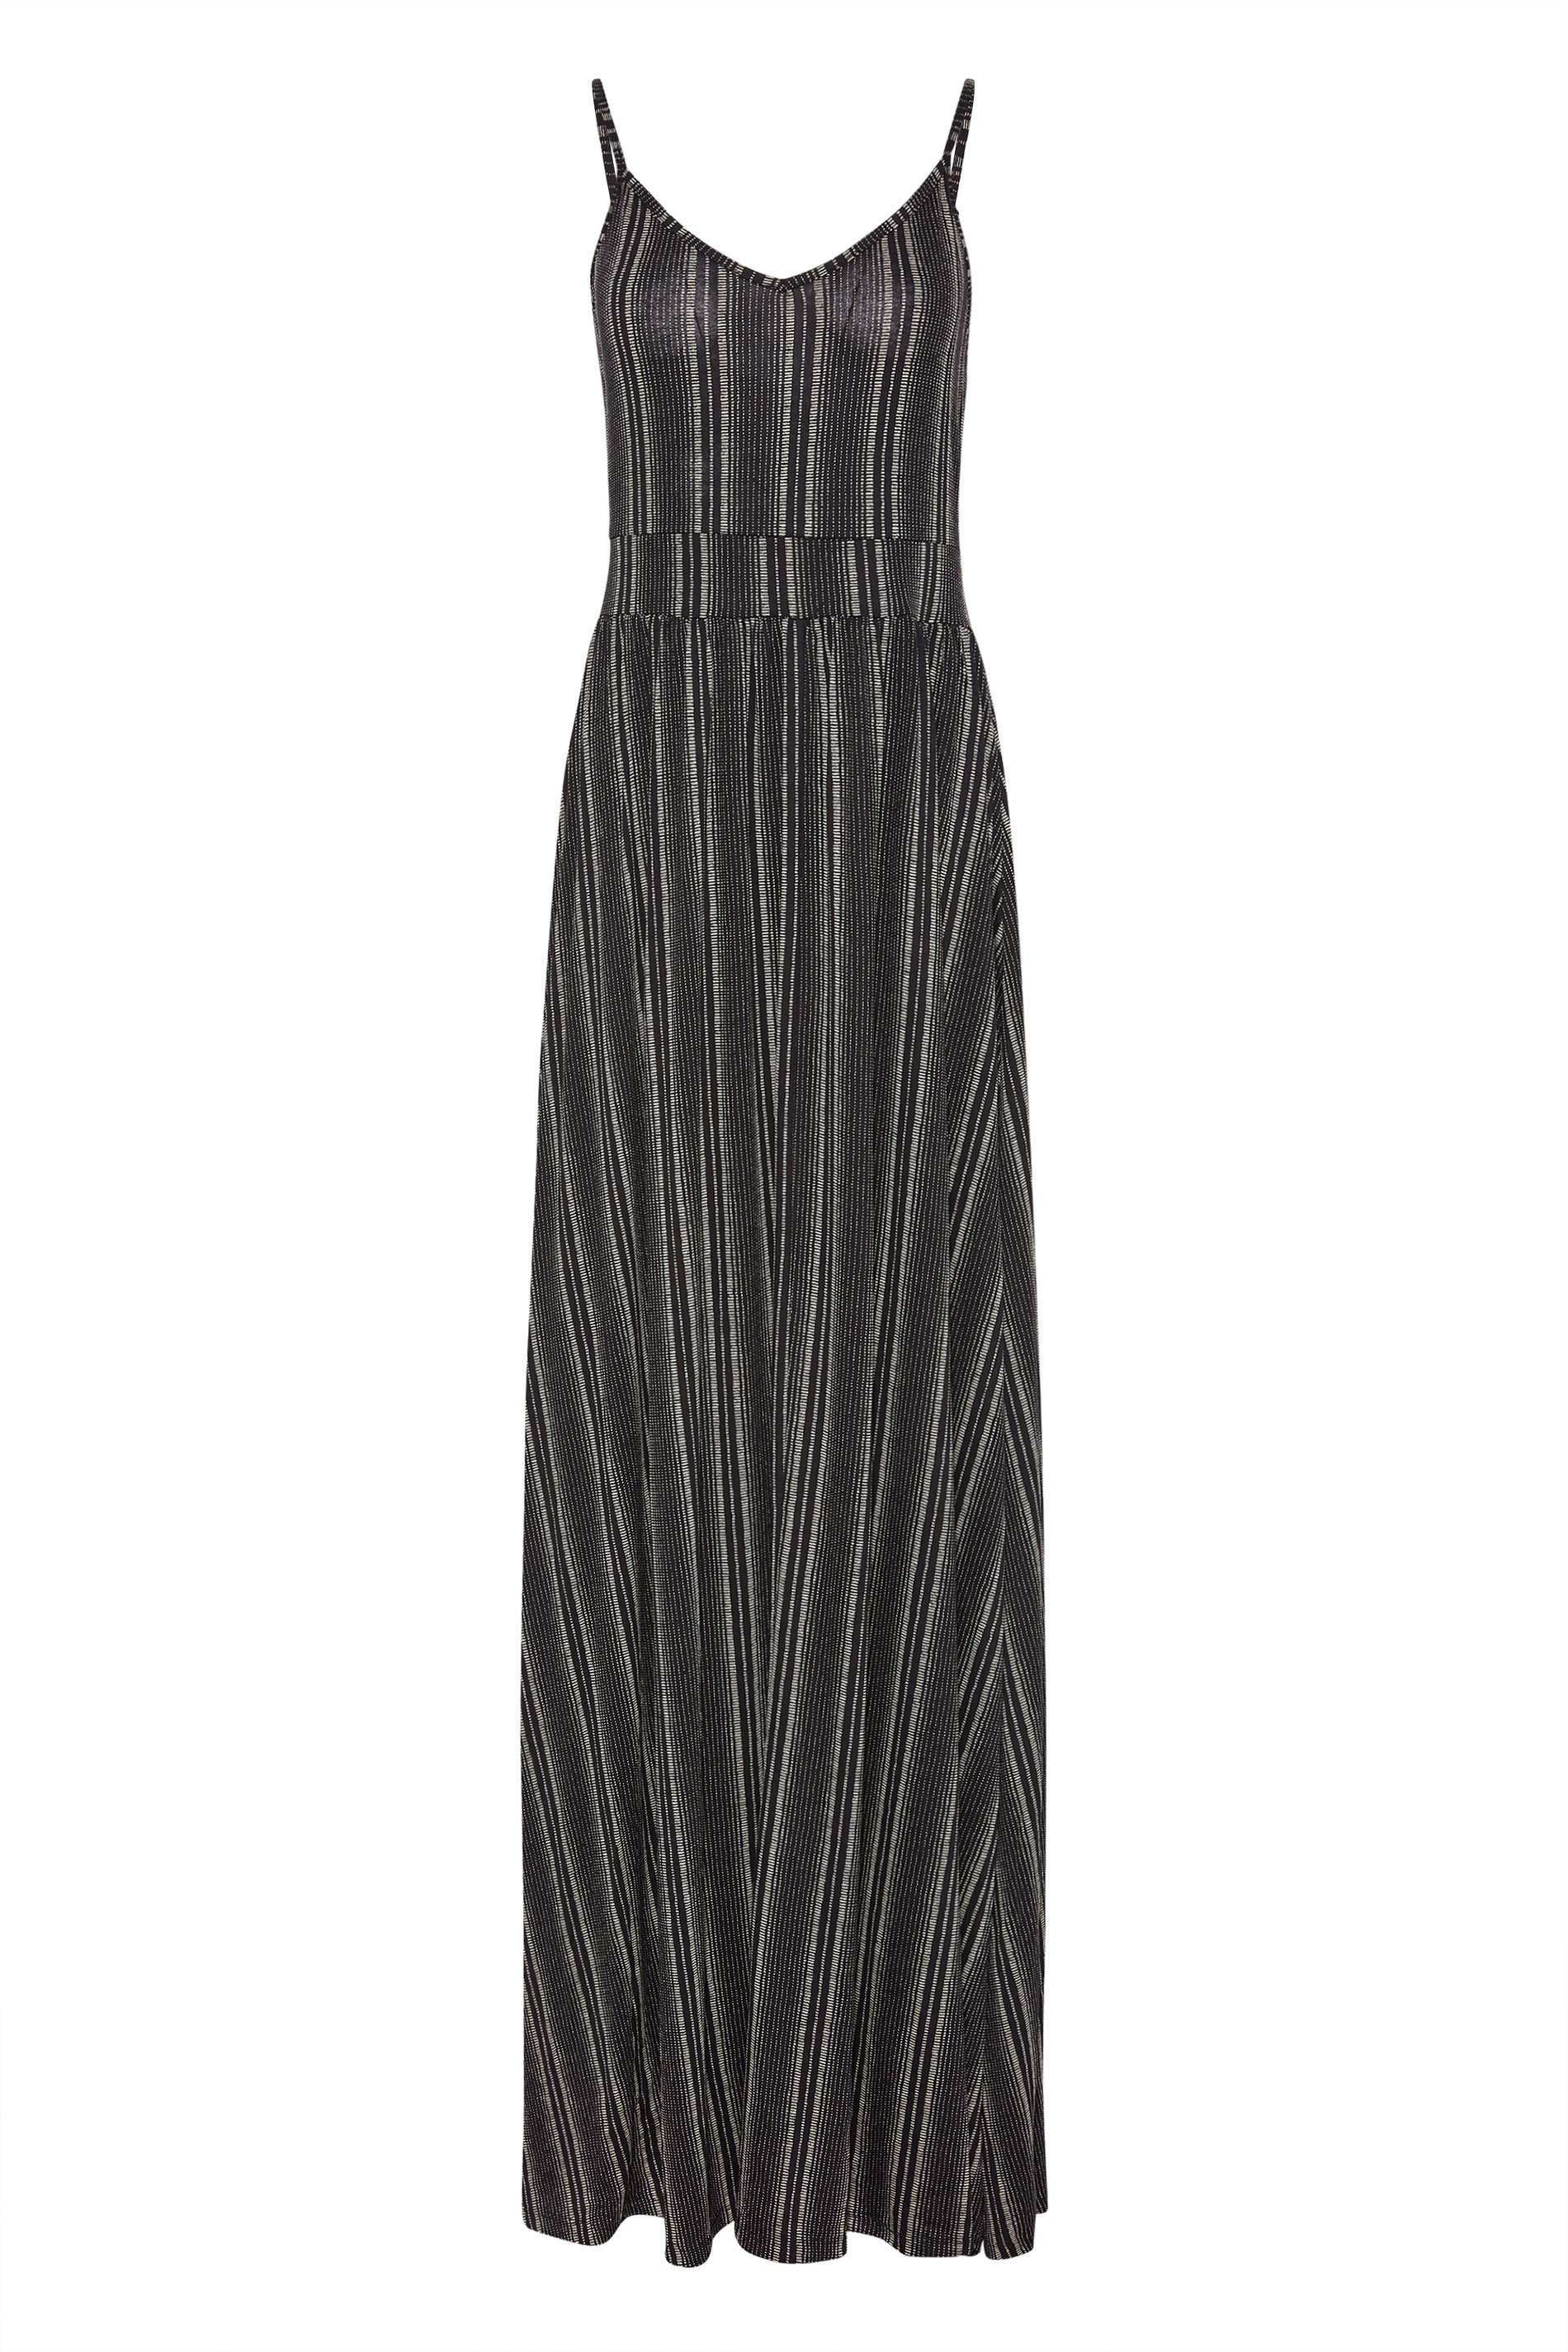 LTS Tall Black Striped Maxi Dress | Long Tall Sally